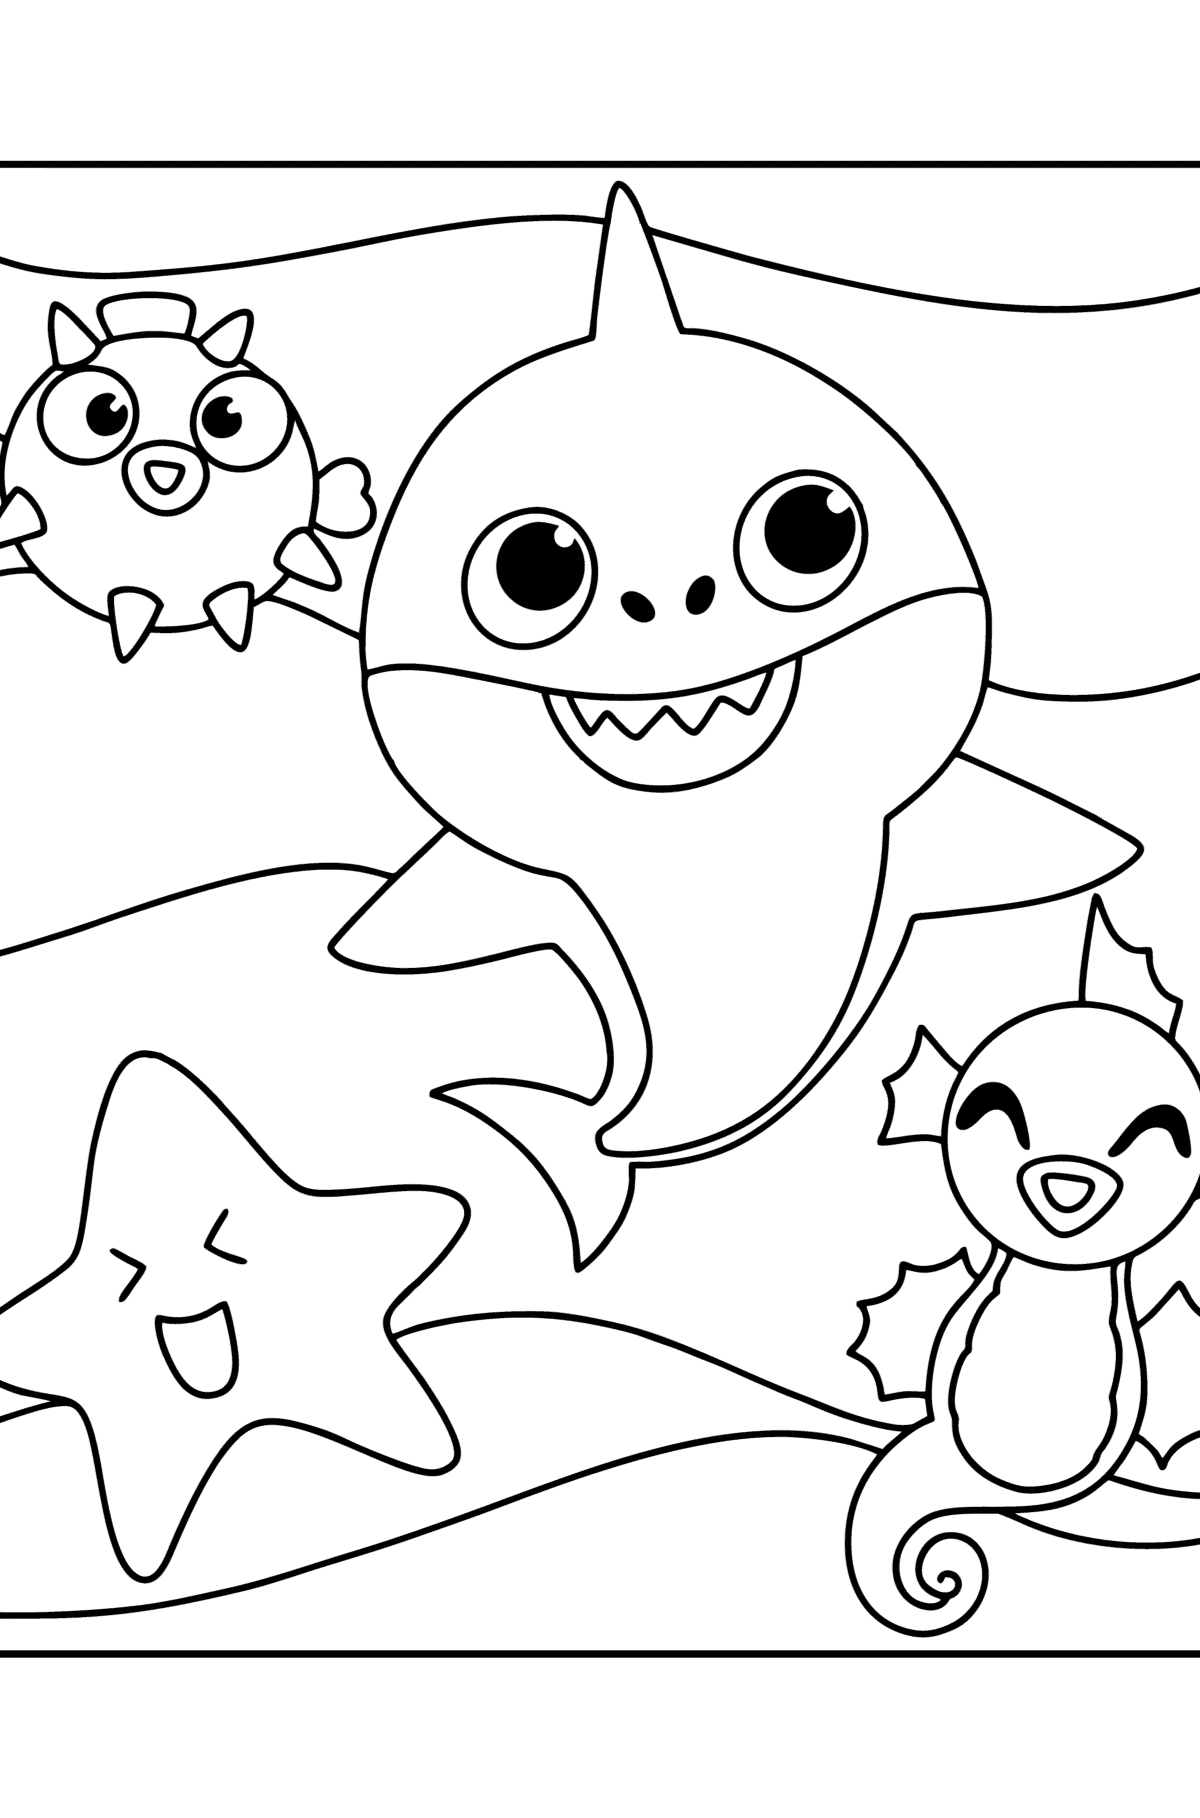 Venner Baby Shark tegning til fargelegging - Tegninger til fargelegging for barn